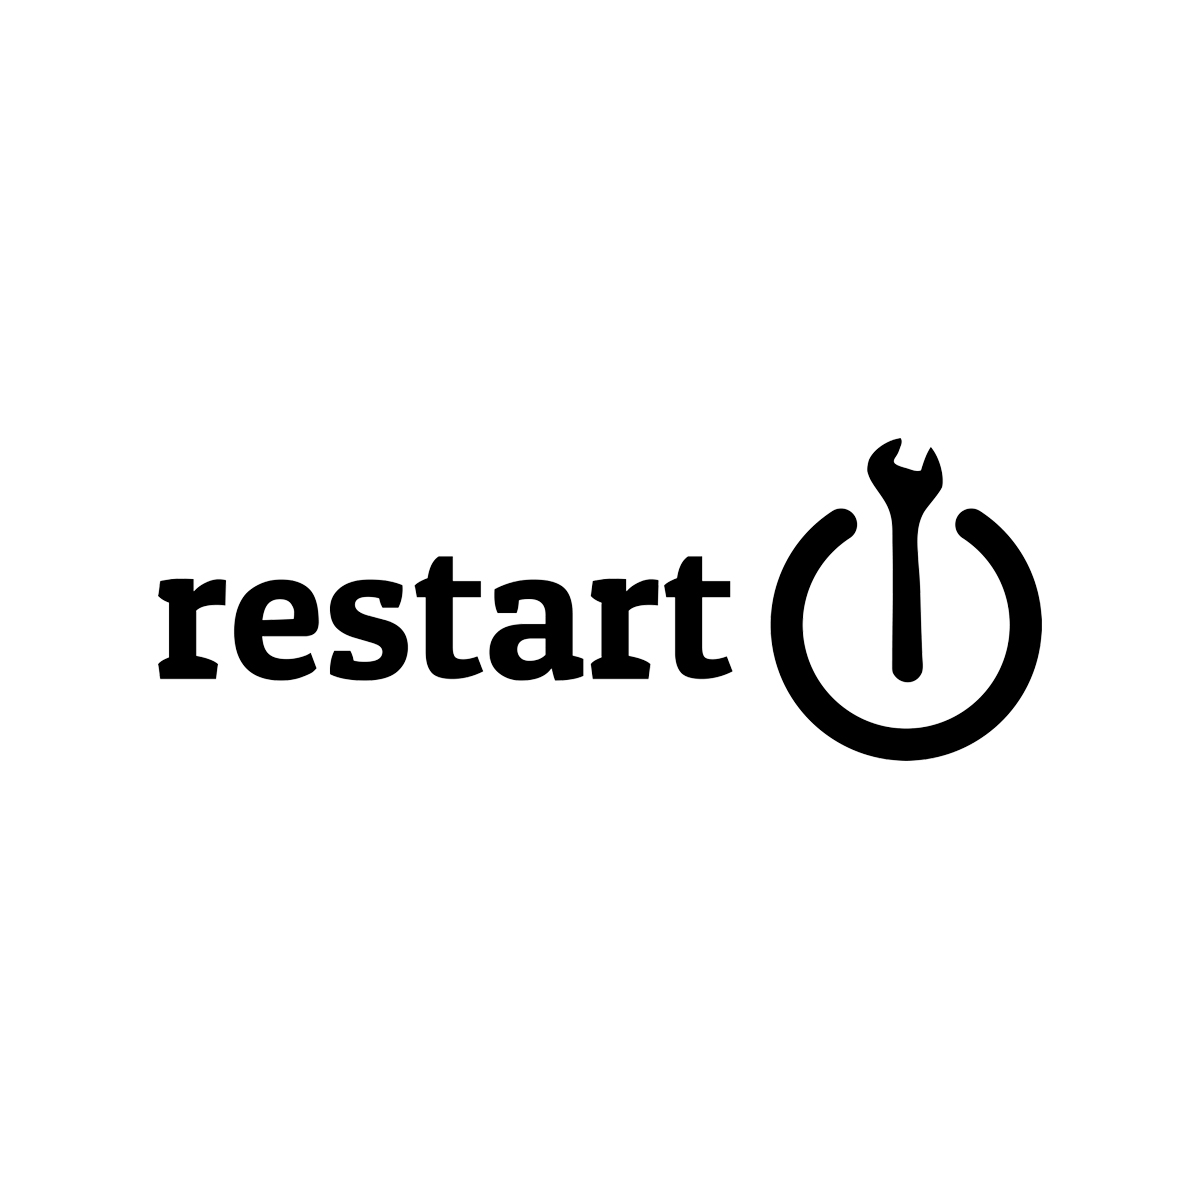 Restart Logo